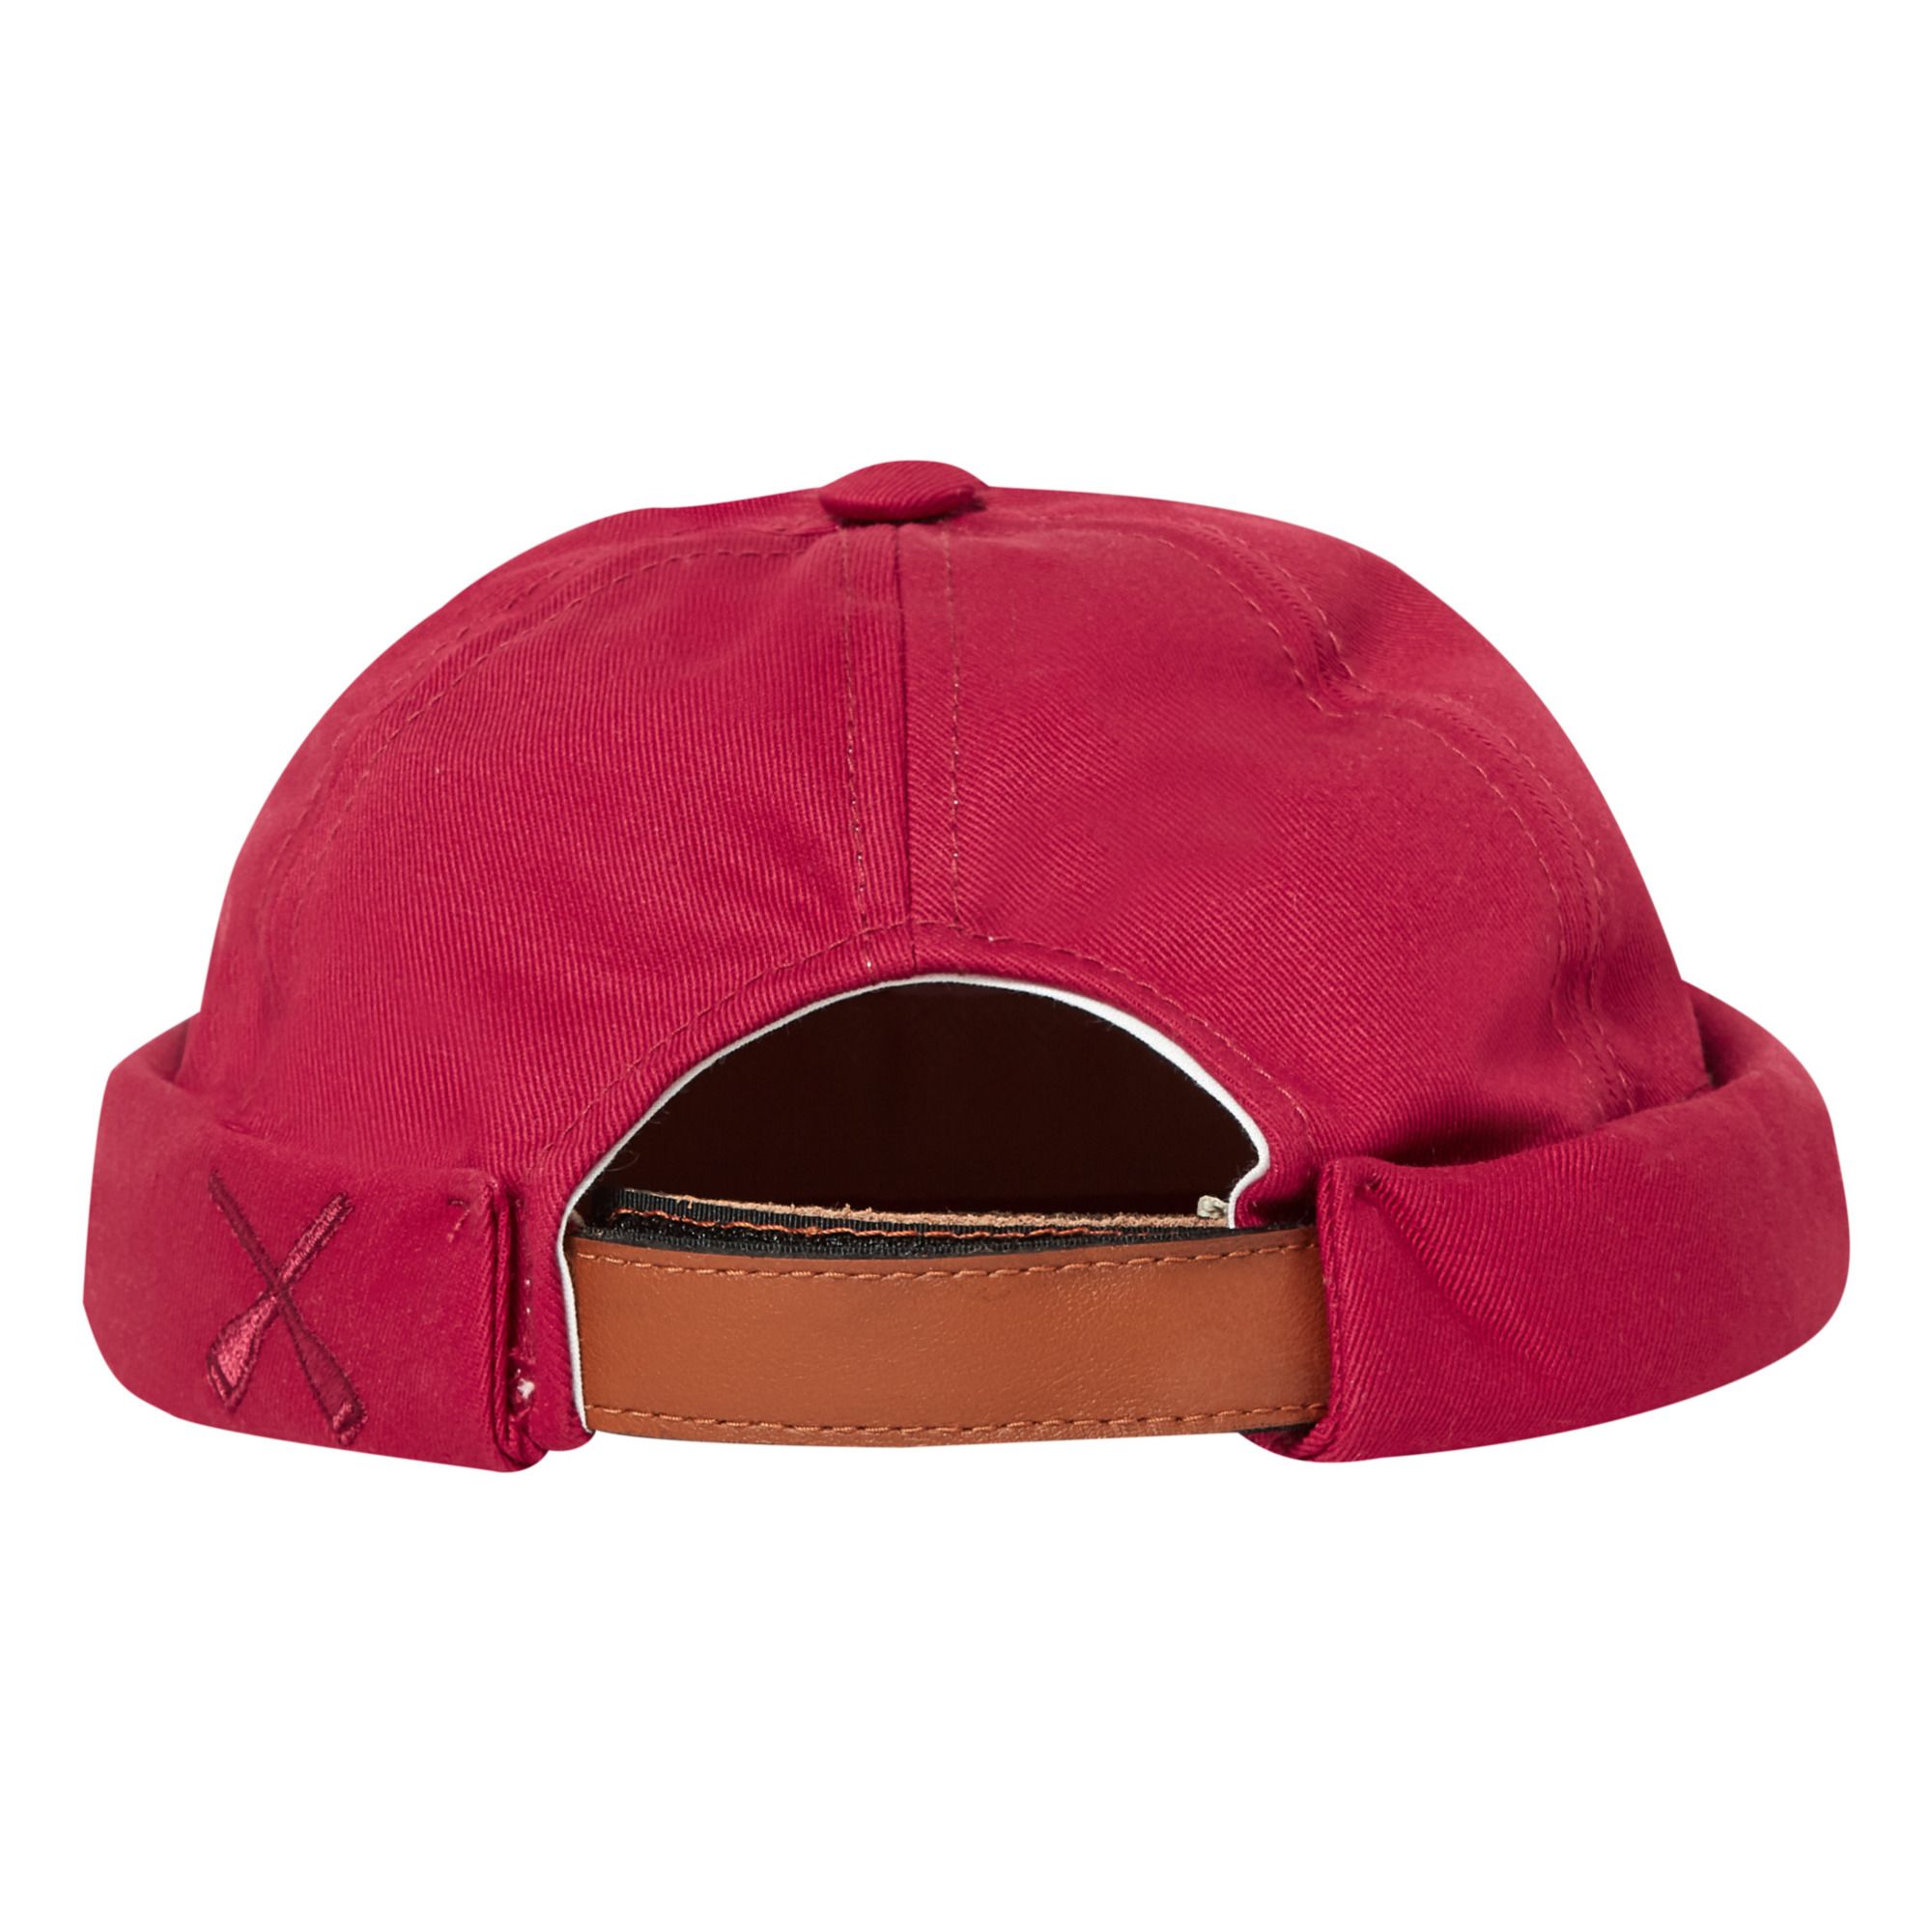 Miki Docker Hat Burdeos- Imagen del producto n°1